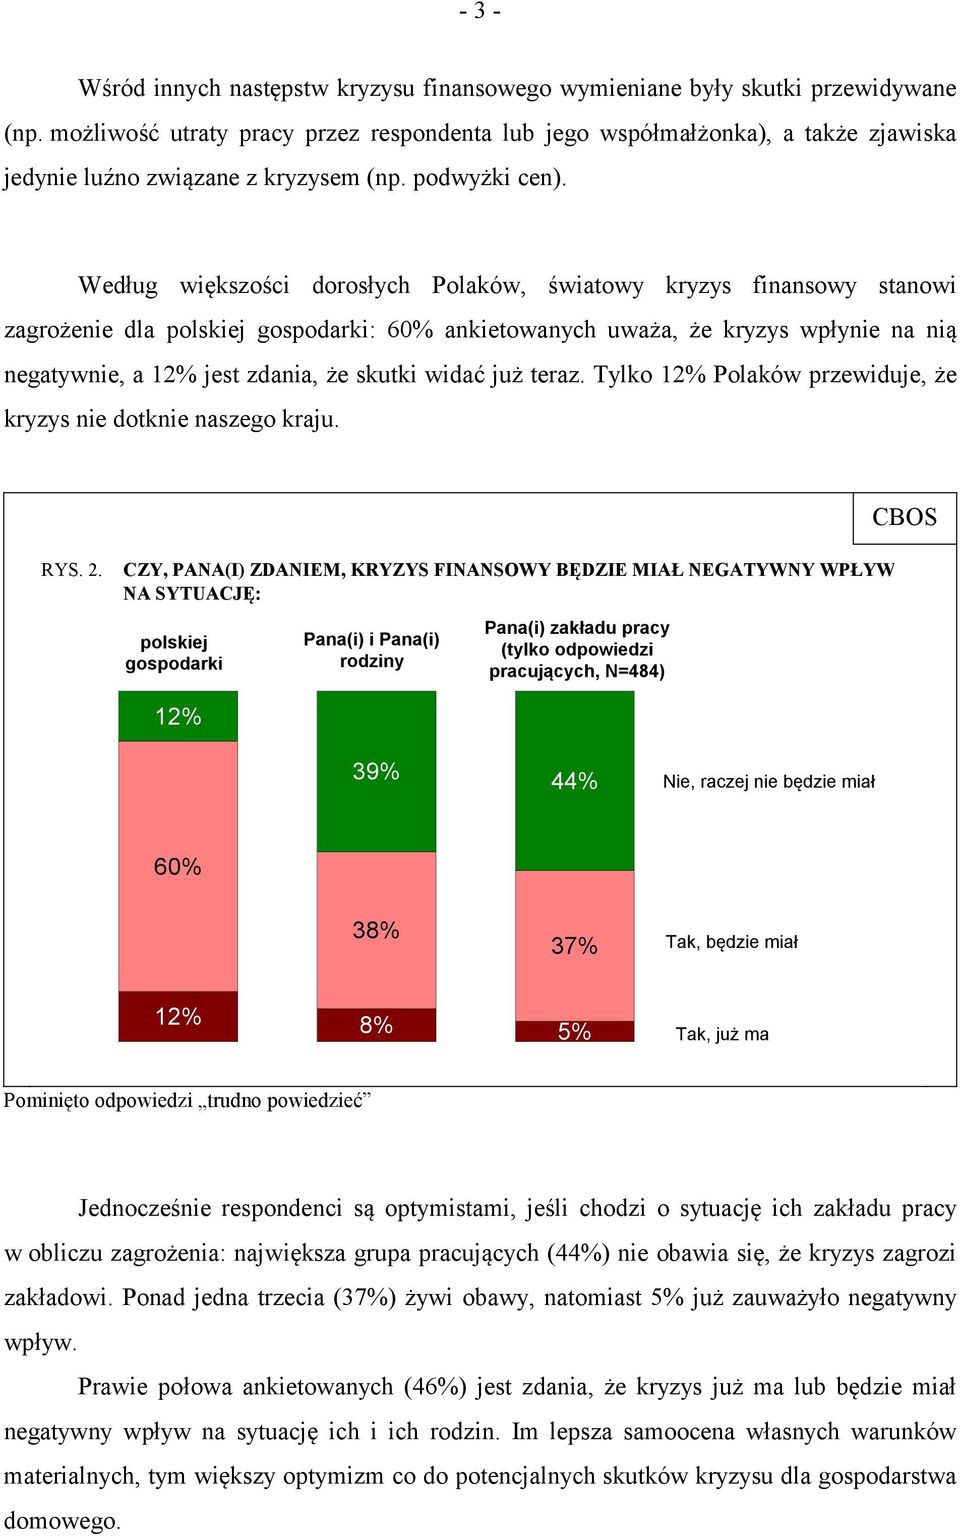 Według większości dorosłych Polaków, światowy kryzys finansowy stanowi zagrożenie dla polskiej gospodarki: 60% ankietowanych uważa, że kryzys wpłynie na nią negatywnie, a 12% jest zdania, że skutki